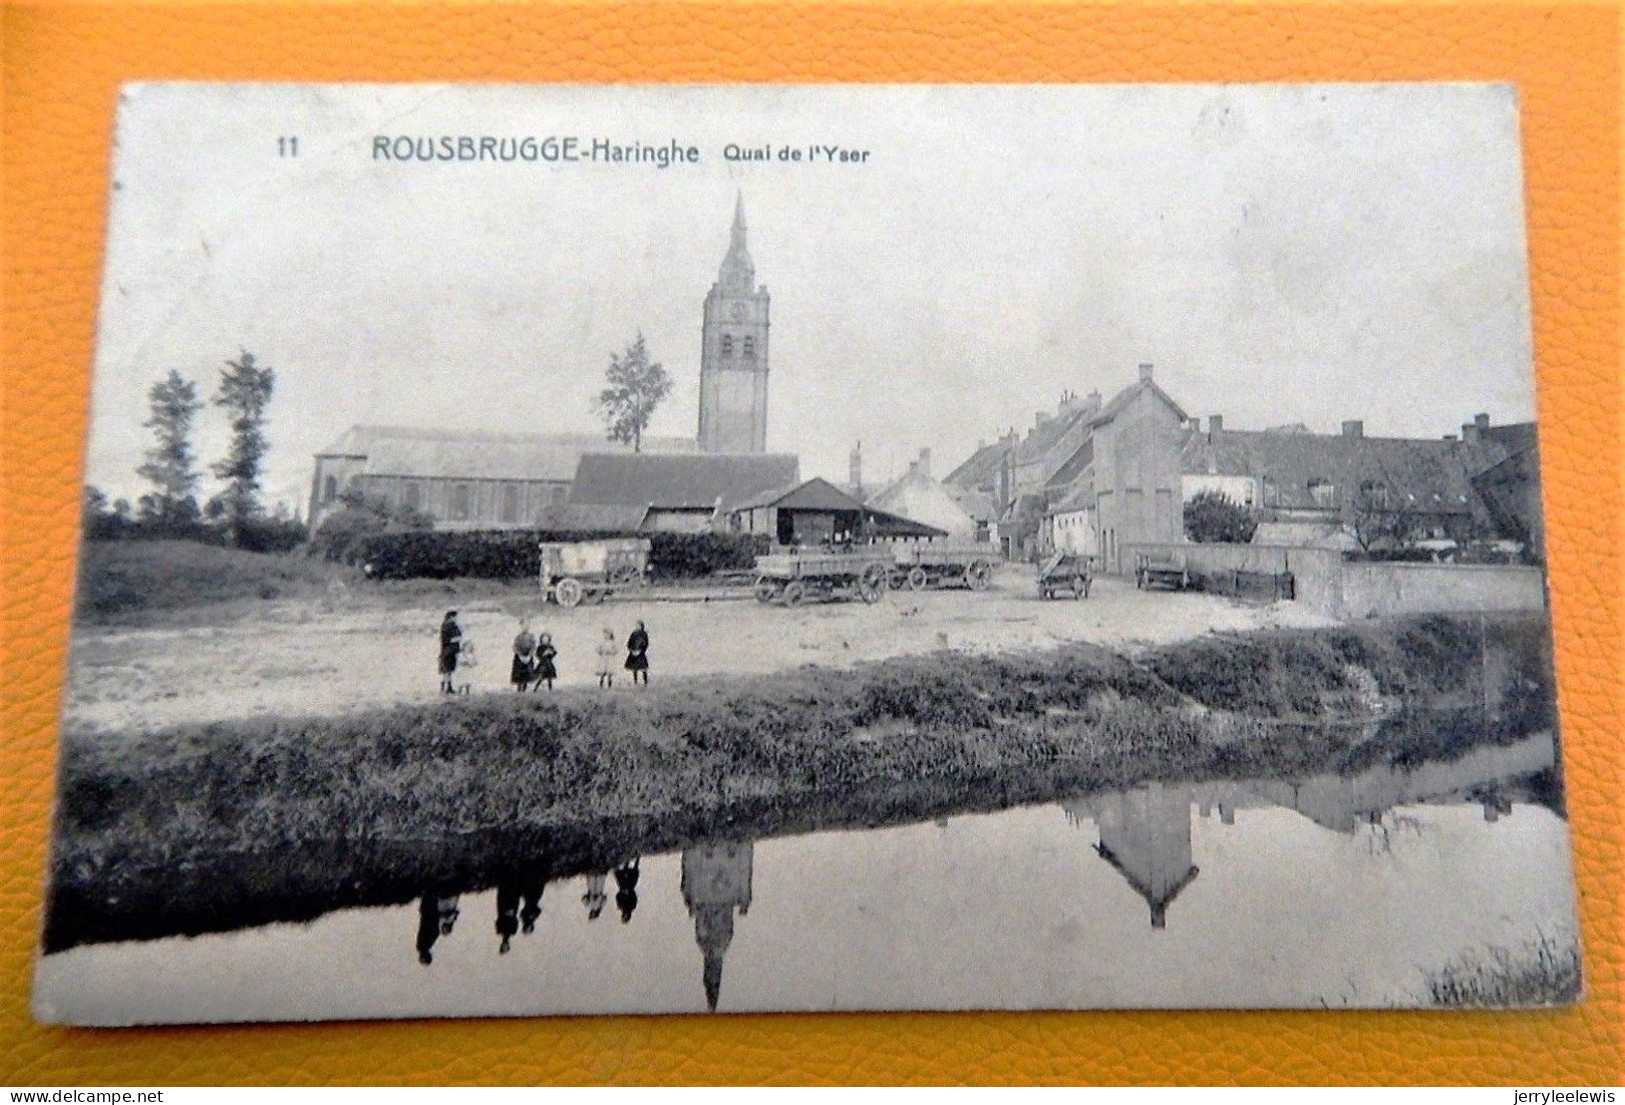 ROESBRUGGE  - ROUSBRUGGE  -  De Kade Van De Ijzer  -  Quai De L' Yser  -  1911 - Poperinge